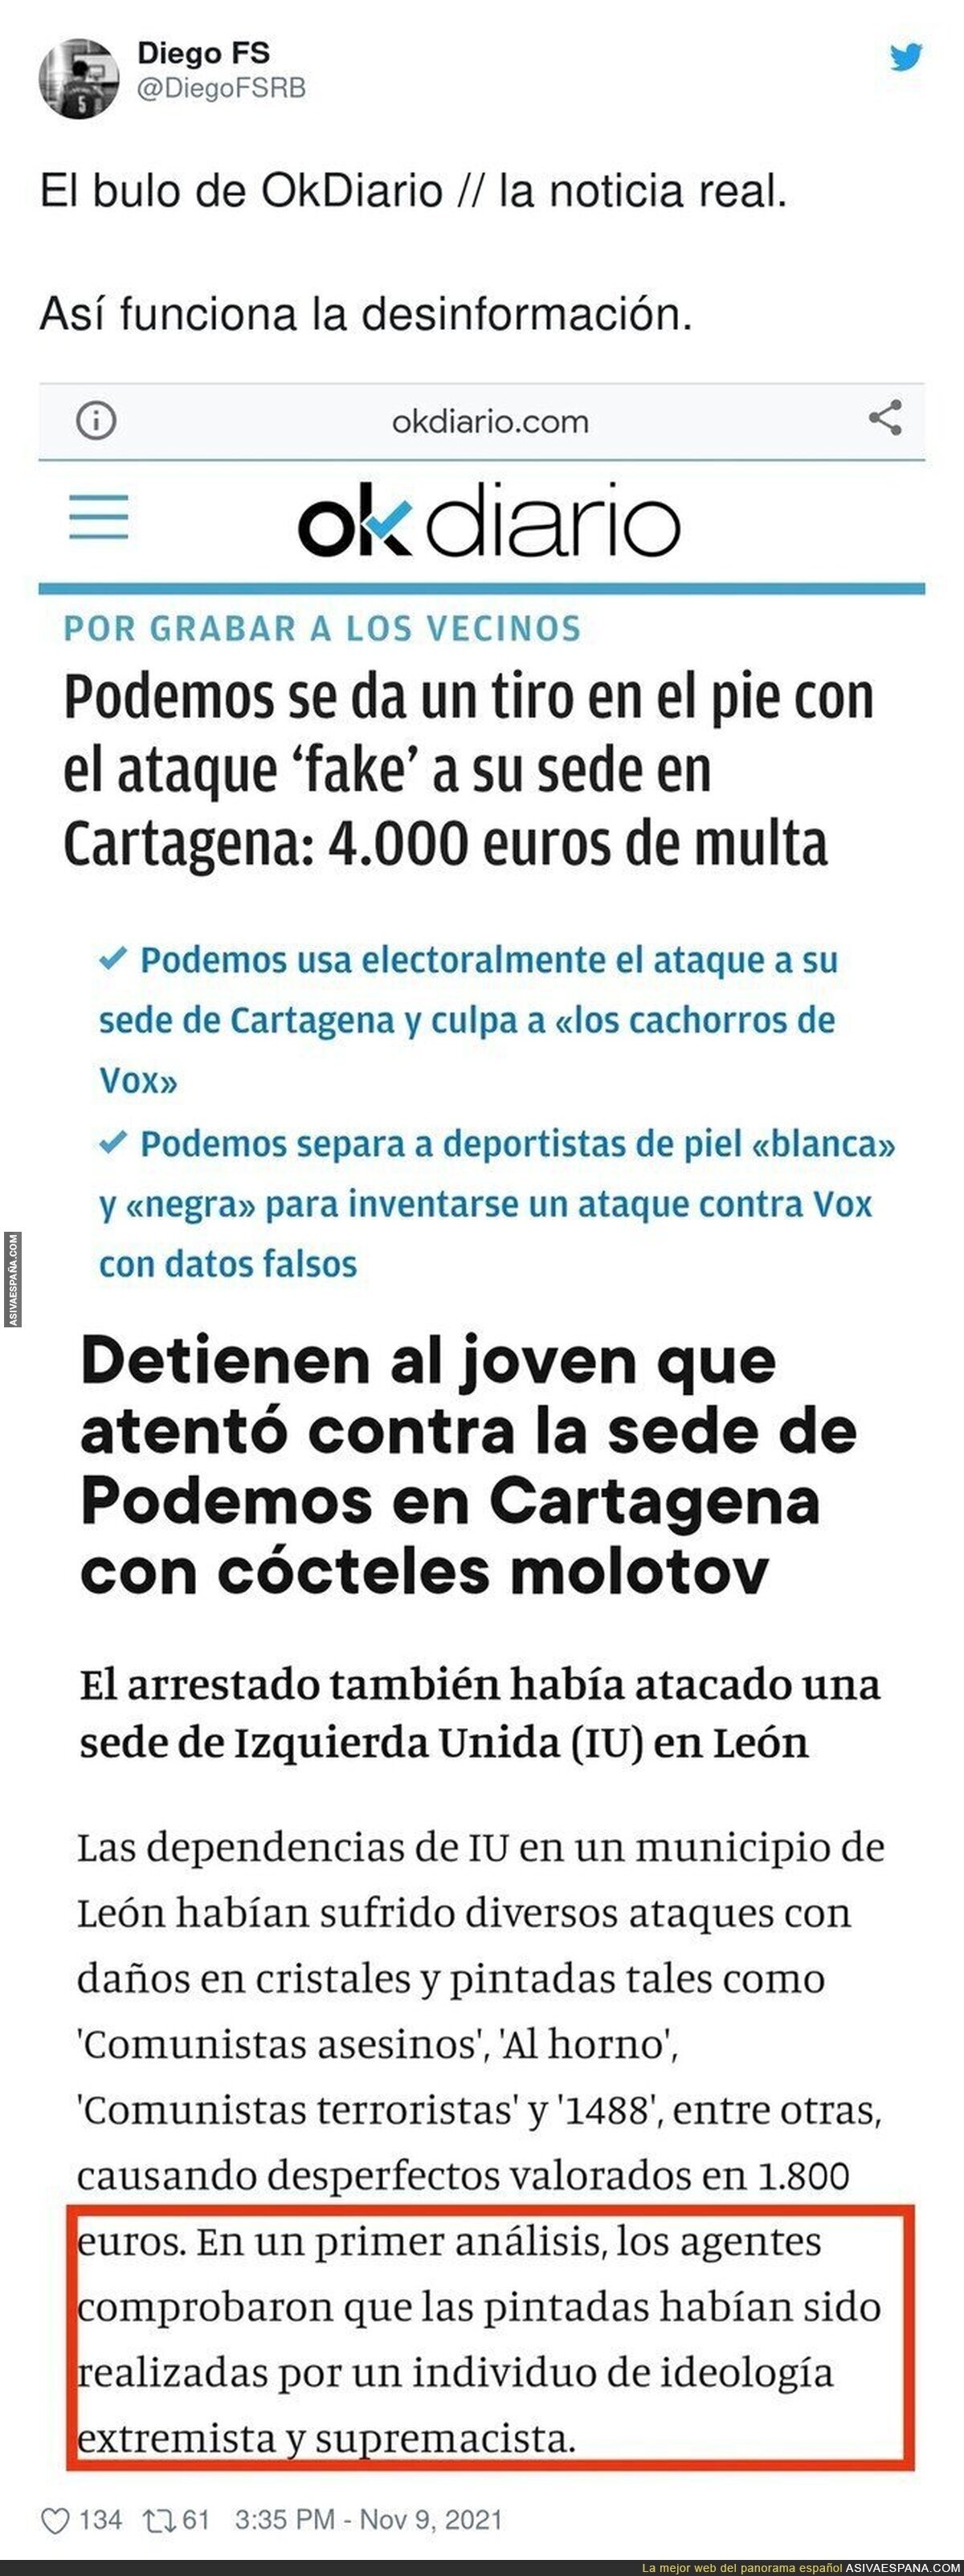 Esto es Okdiario y su desinformación total acerca de Podemos